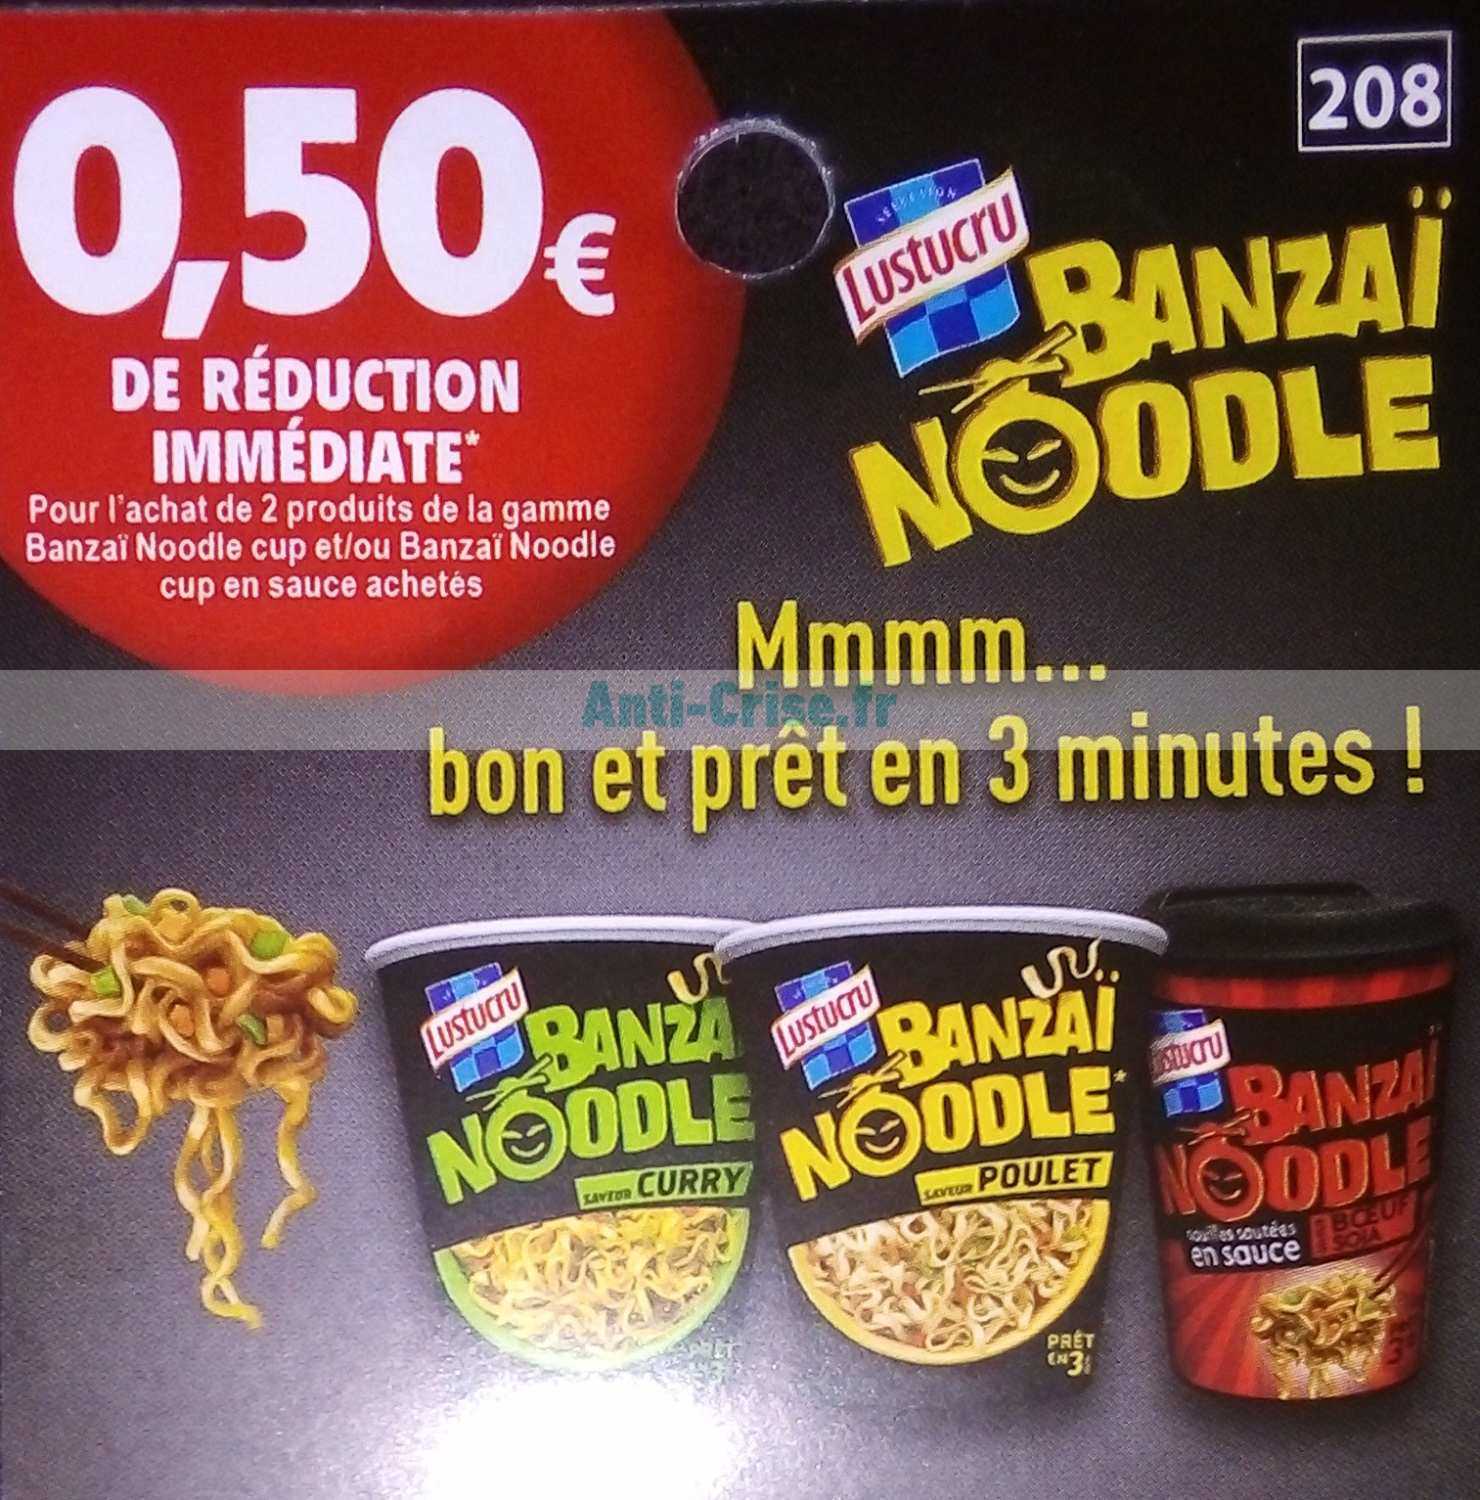 Banzai Noodle Saveur Poulet - Lustucru